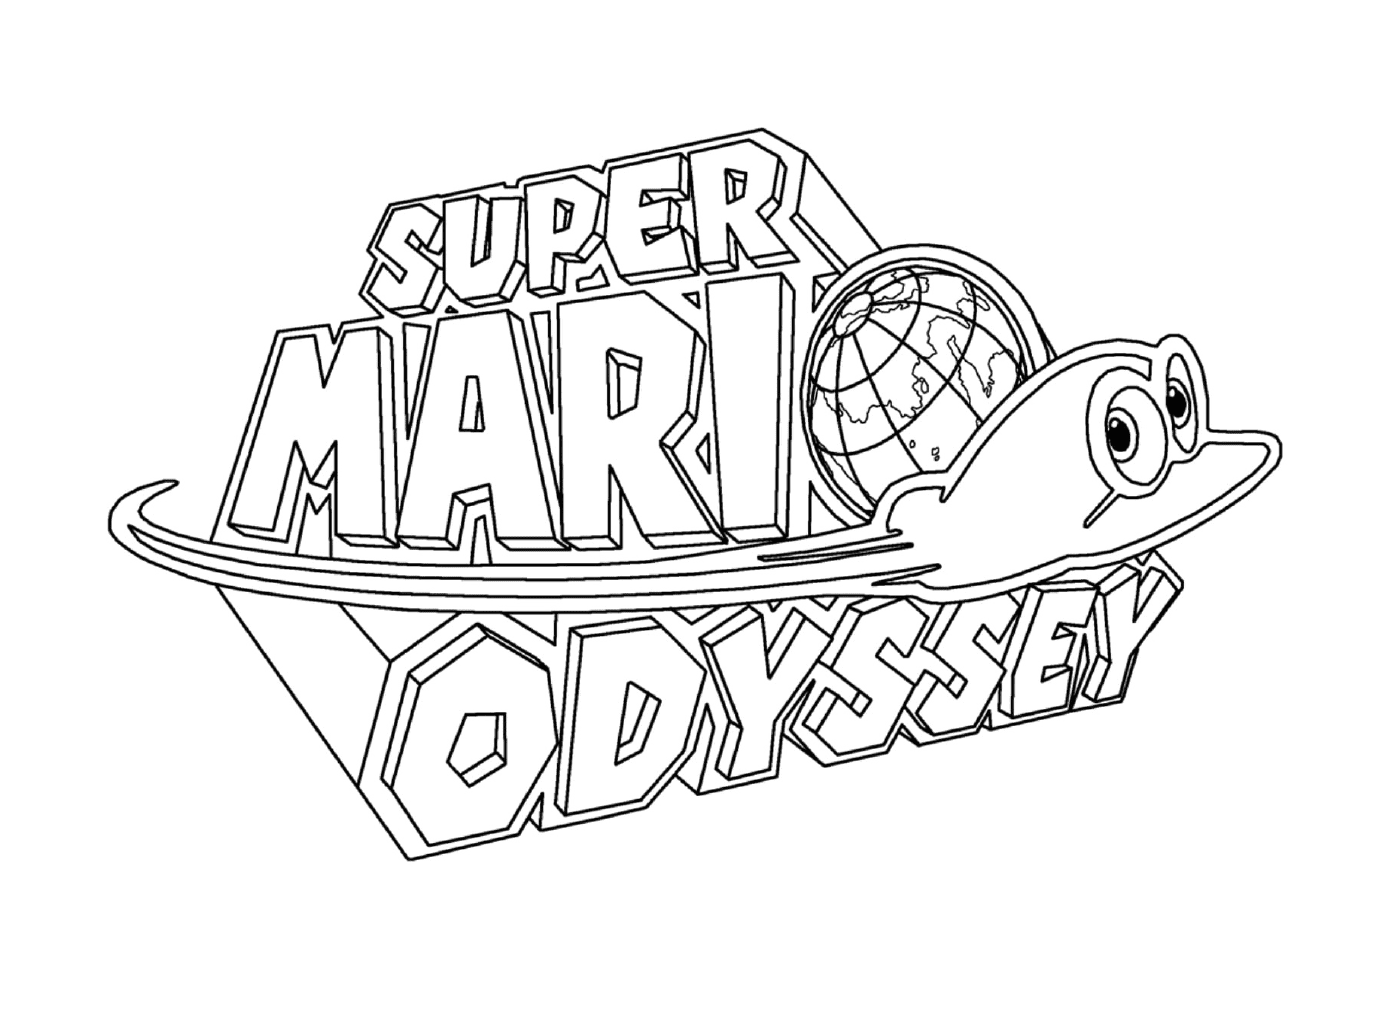  Логотип Nintendo Super Mario Odyssey 